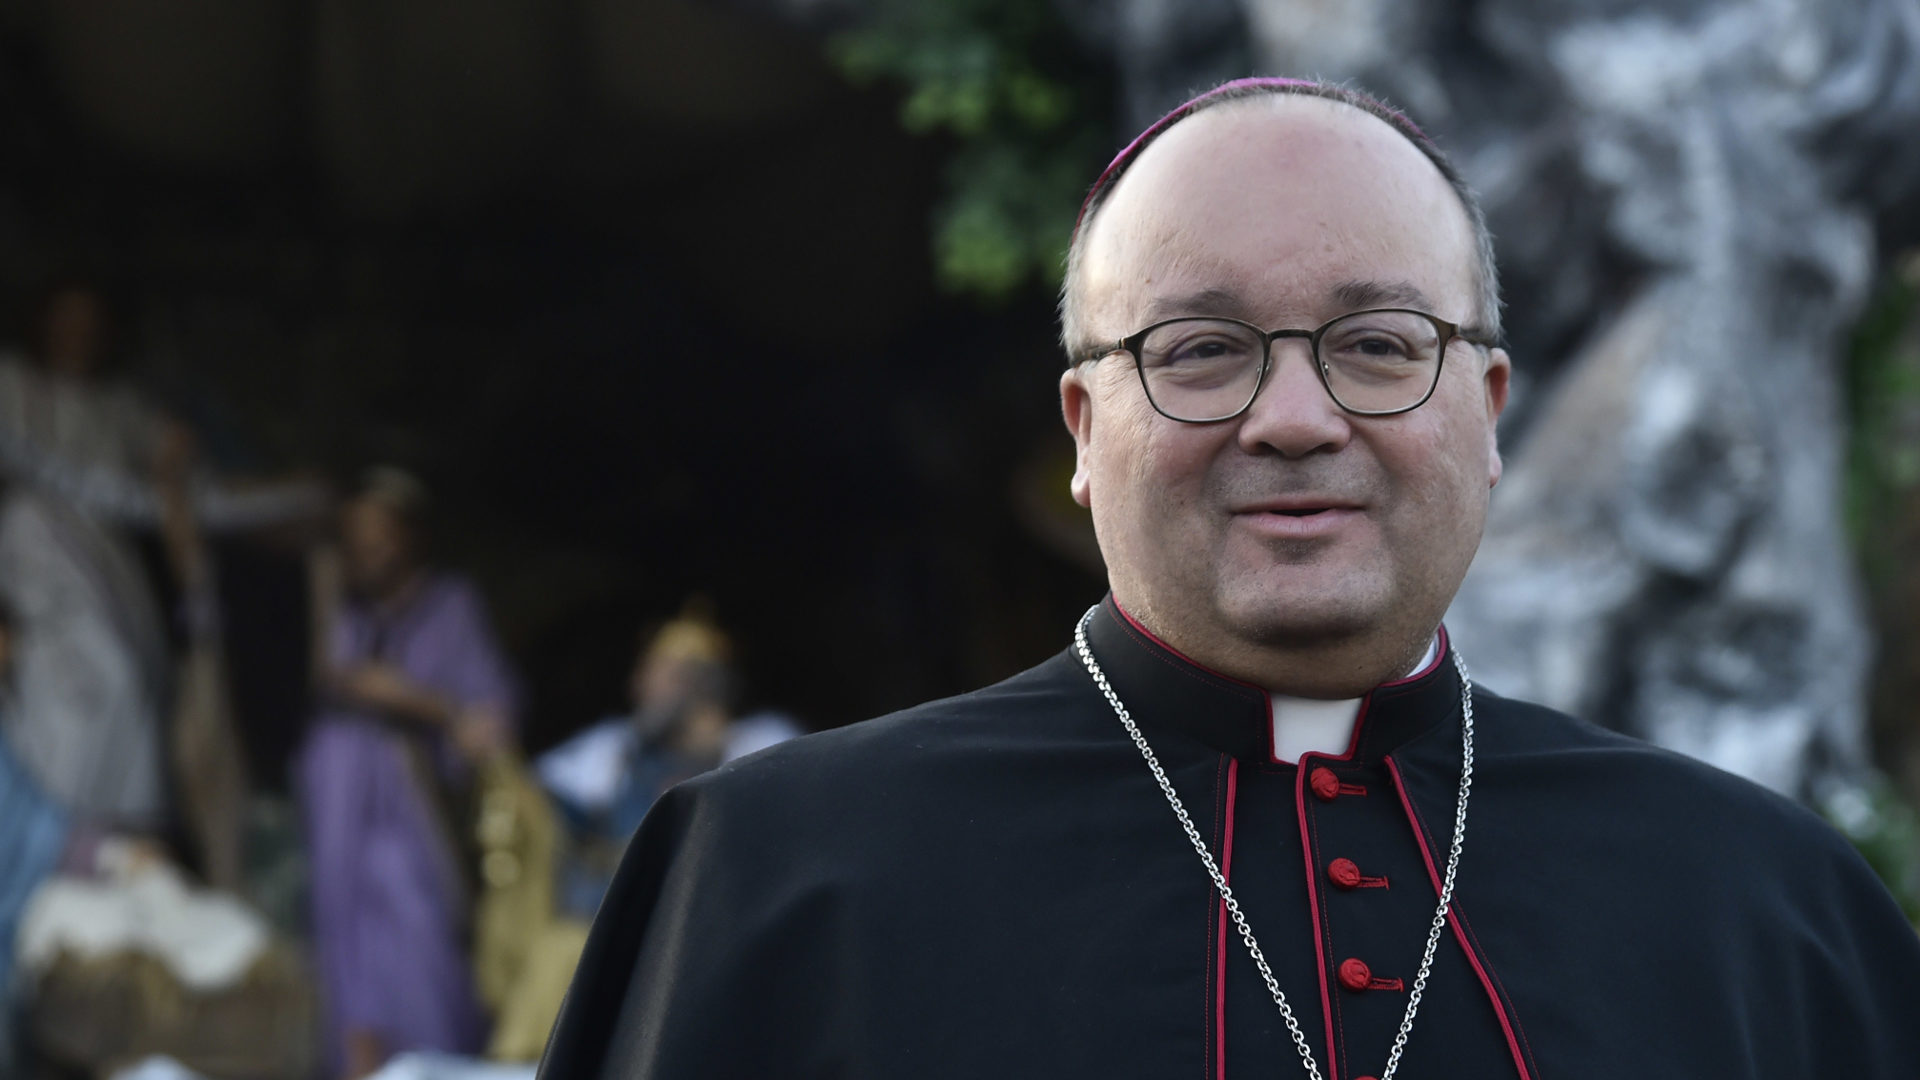 Charles Jude Scicluna, Erzbischof von Malta